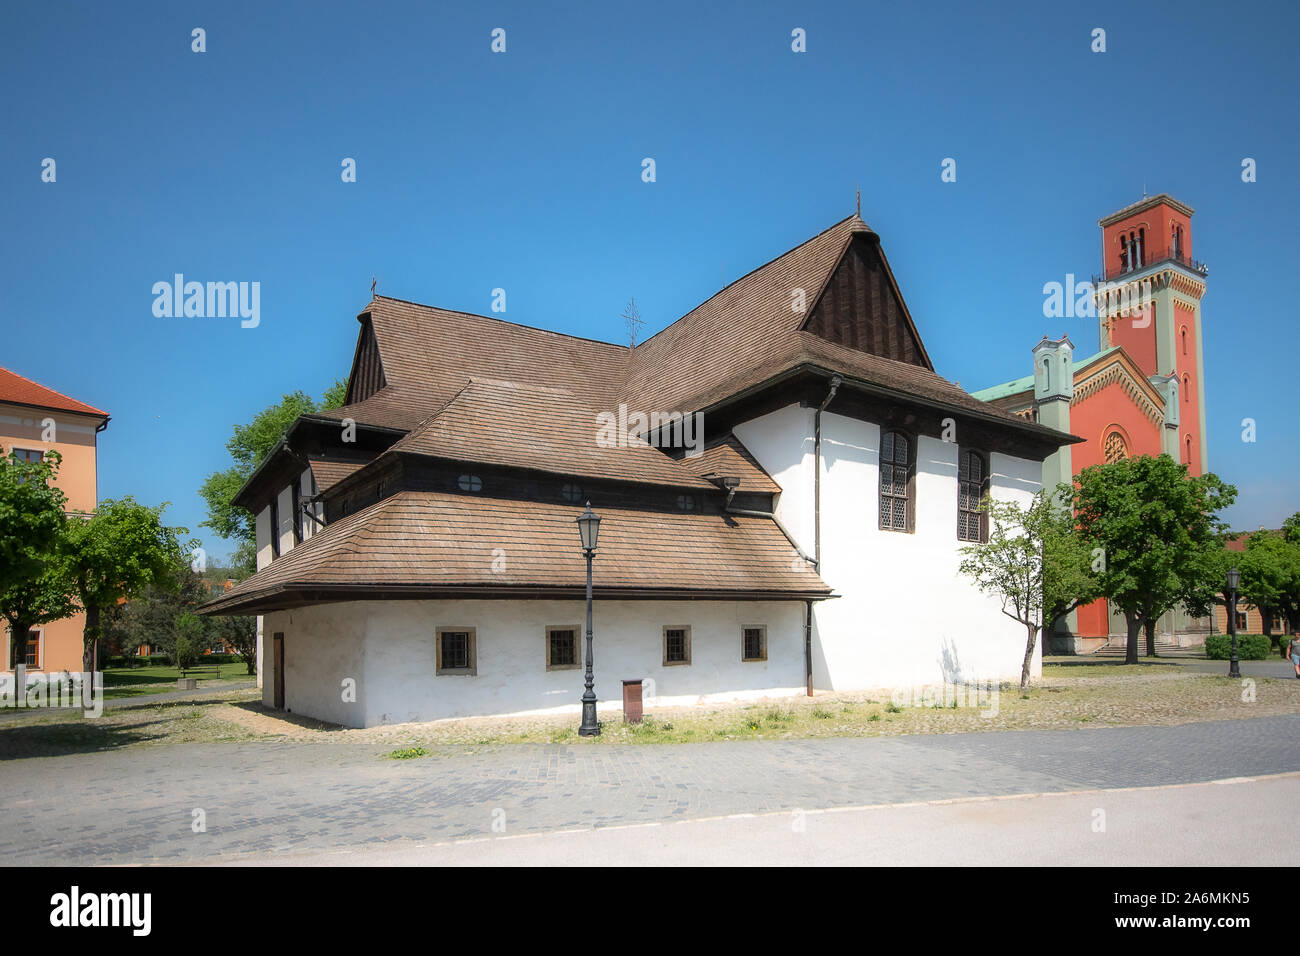 Église évangélique en bois, articulaire. UNESCO World Heritage site, Kežmarok, Slovaquie Banque D'Images